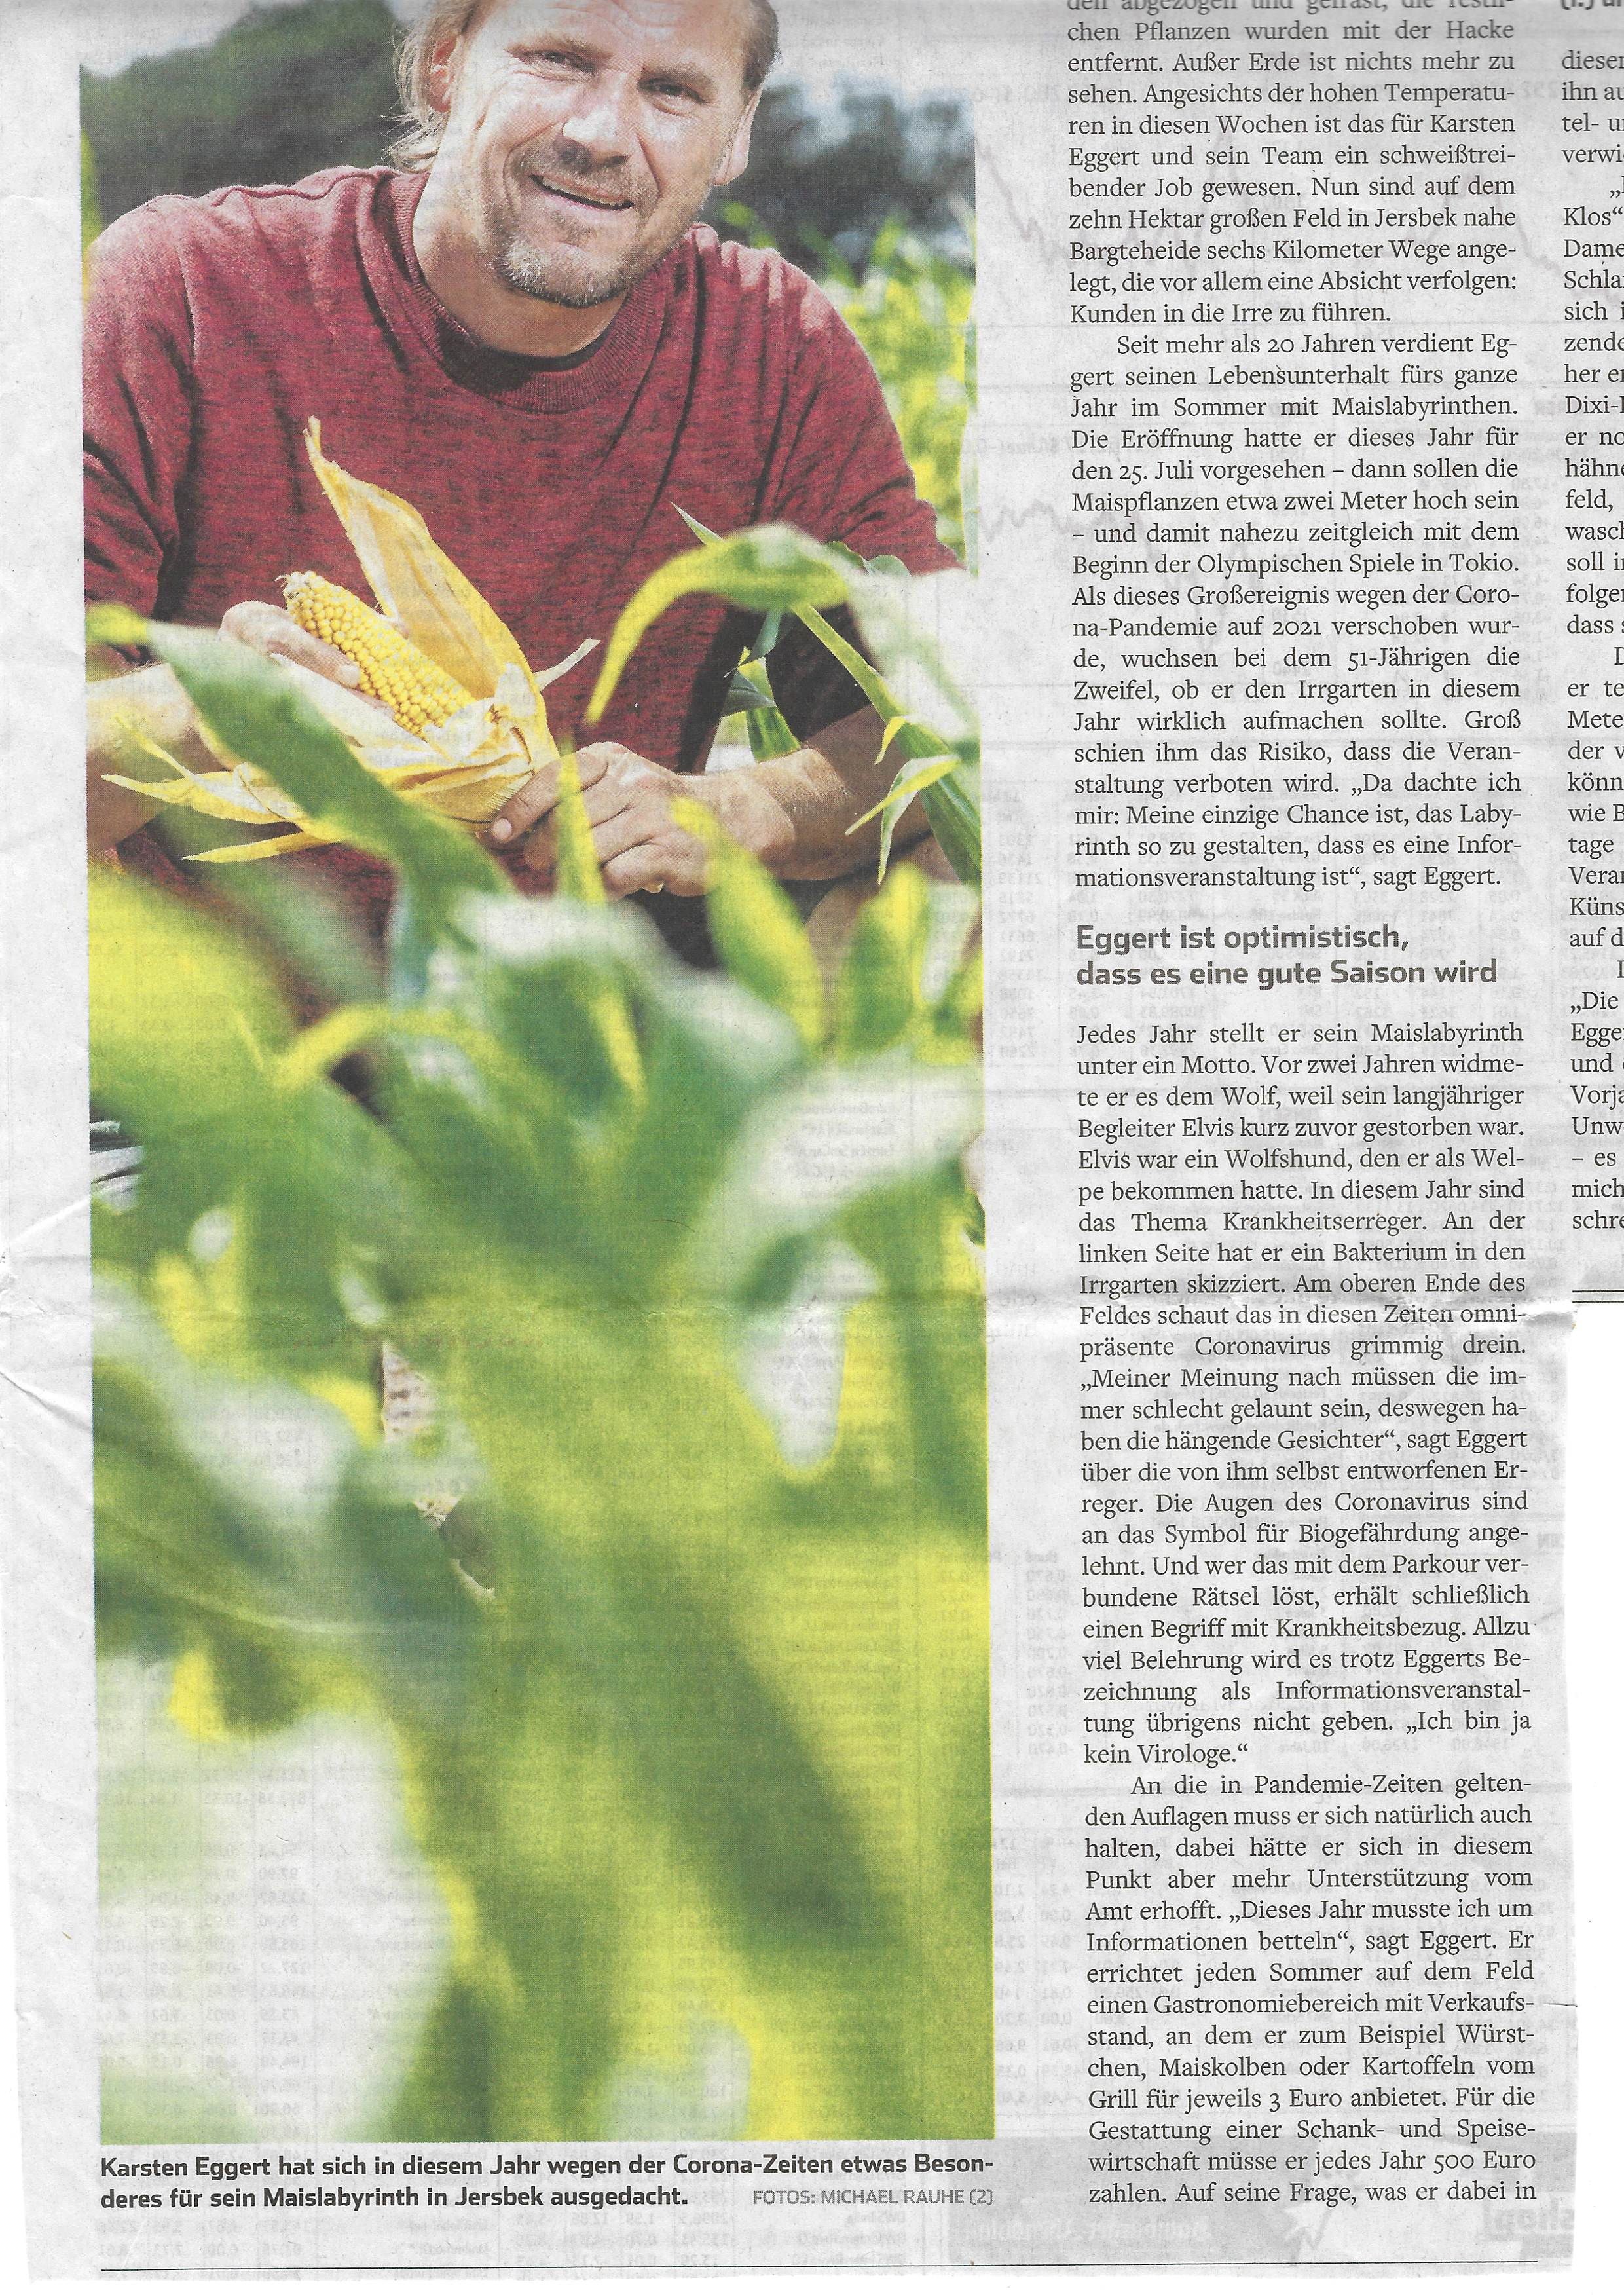 Bild des Zeitungsartikel aus dem Hamburger Abendblatt mit dem Titel Zur Corona-Jagd ins Maisfeld vom 26.06.2020 über das ScreamTeam